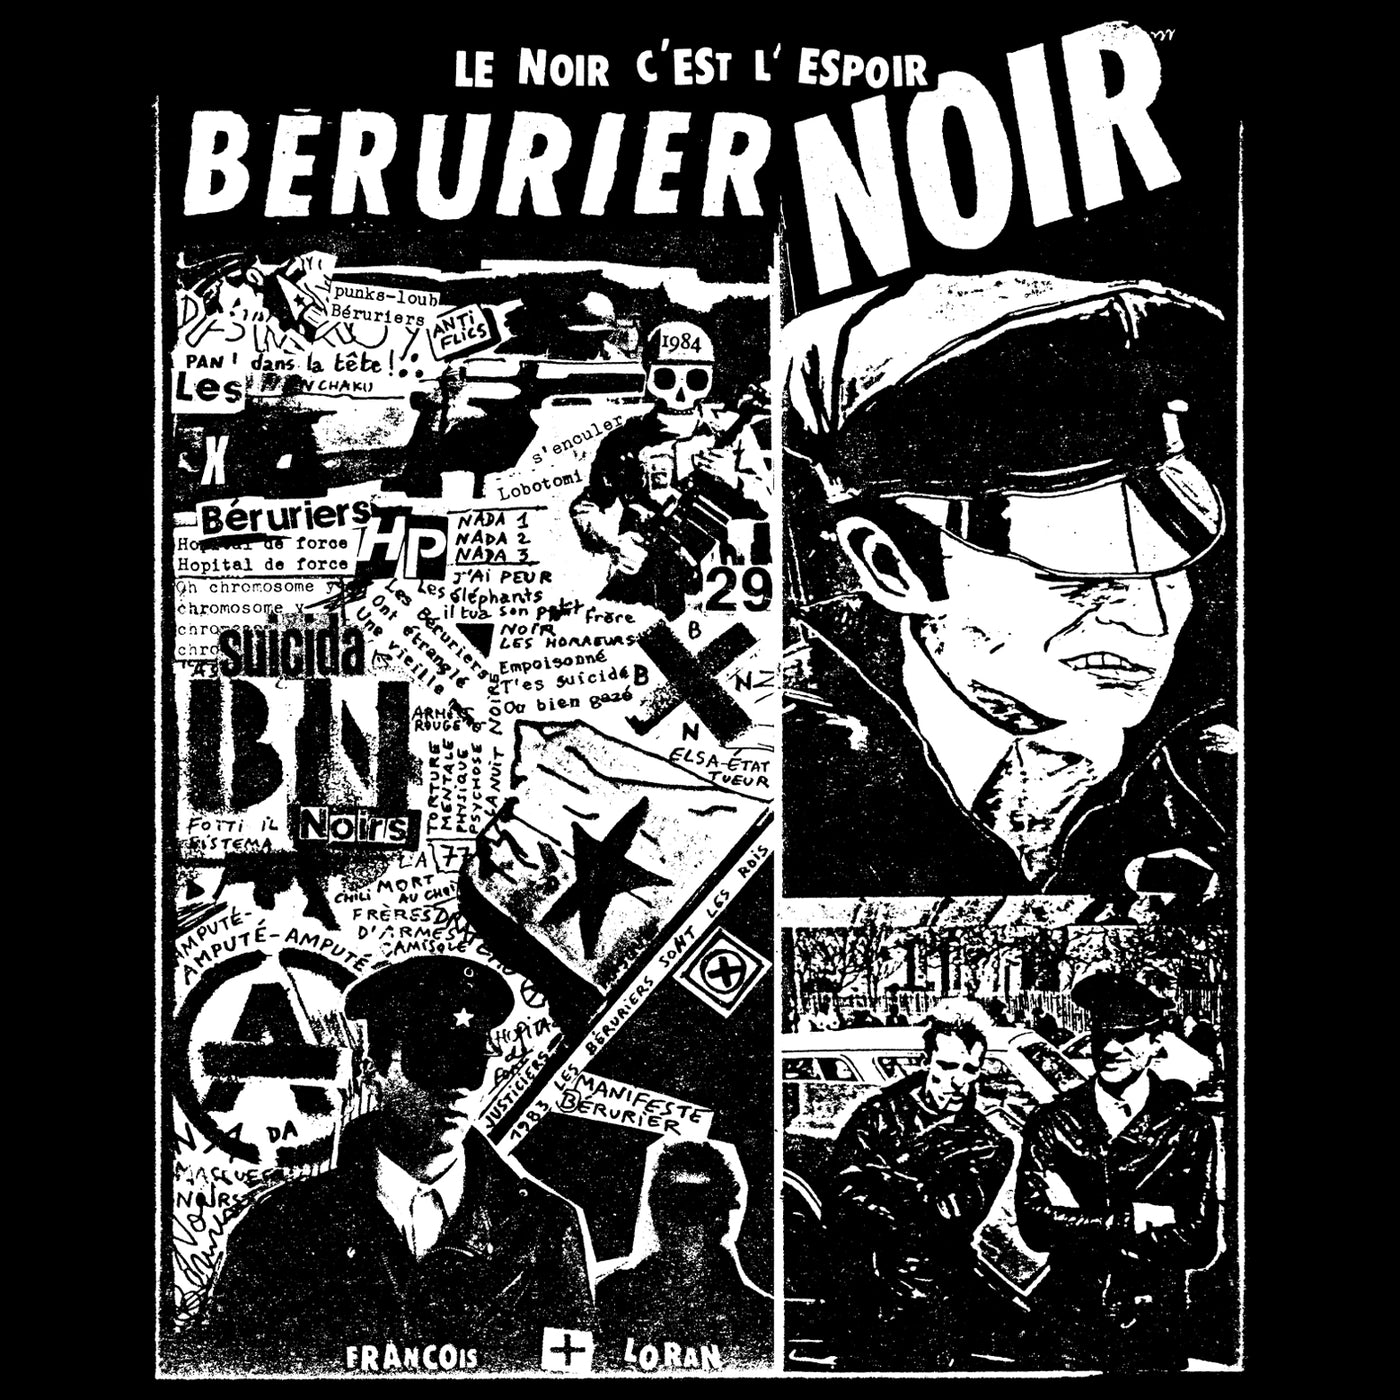 Visuel du Débardeur Bérurier Noir "1983" reprenant un vieux collage issu des archives du groupe